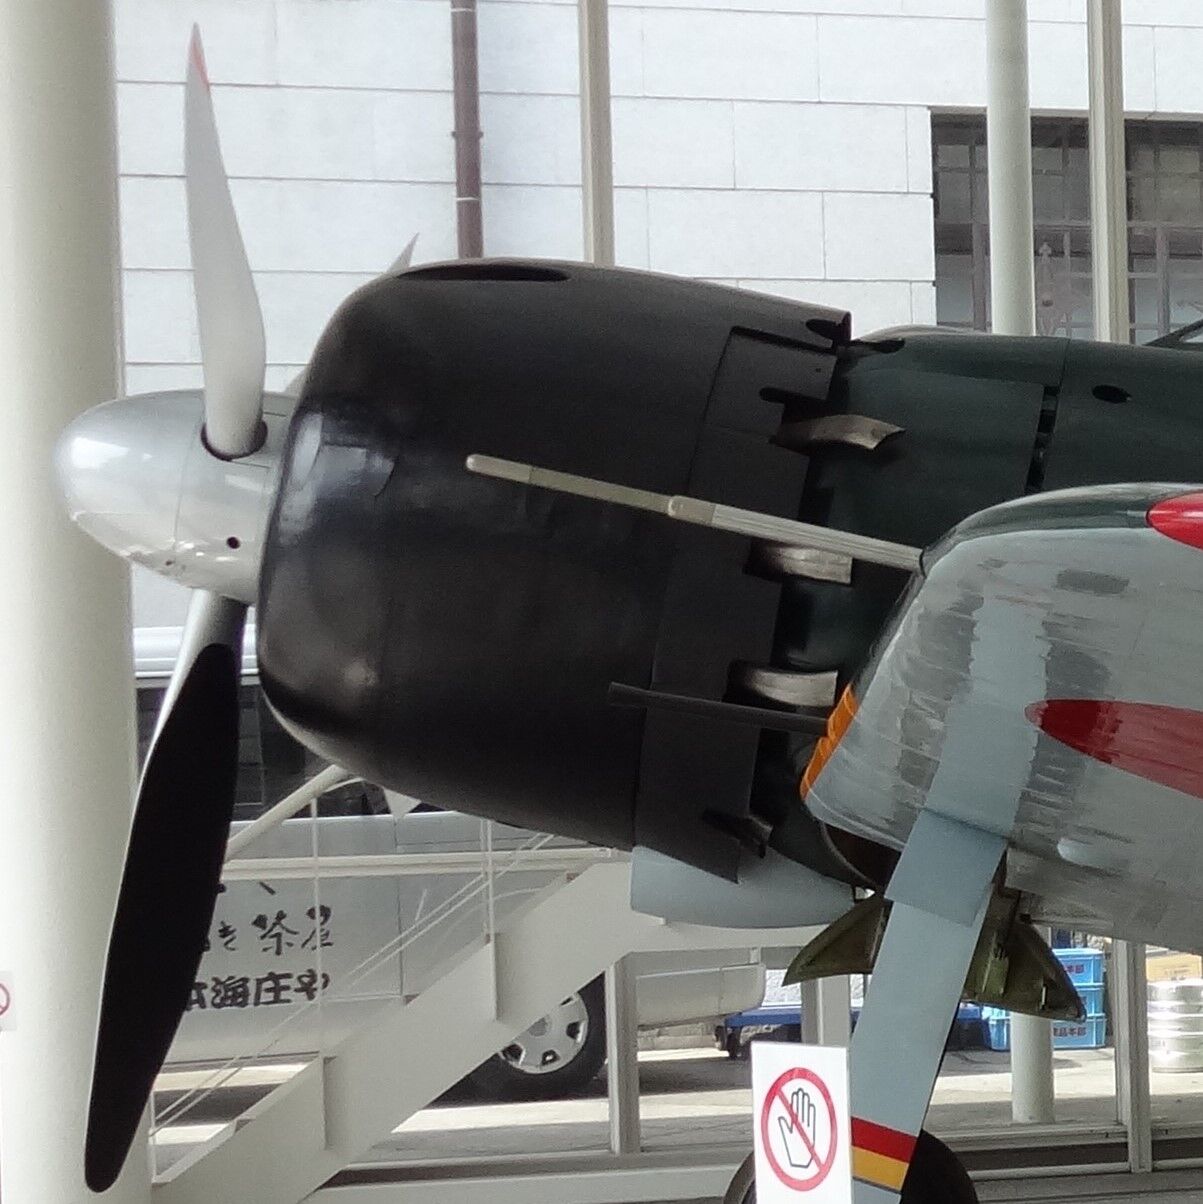 考察 3 零戦52型 A6m5 の速度性能について Ww2航空機の性能 Warbirdperformanceblog